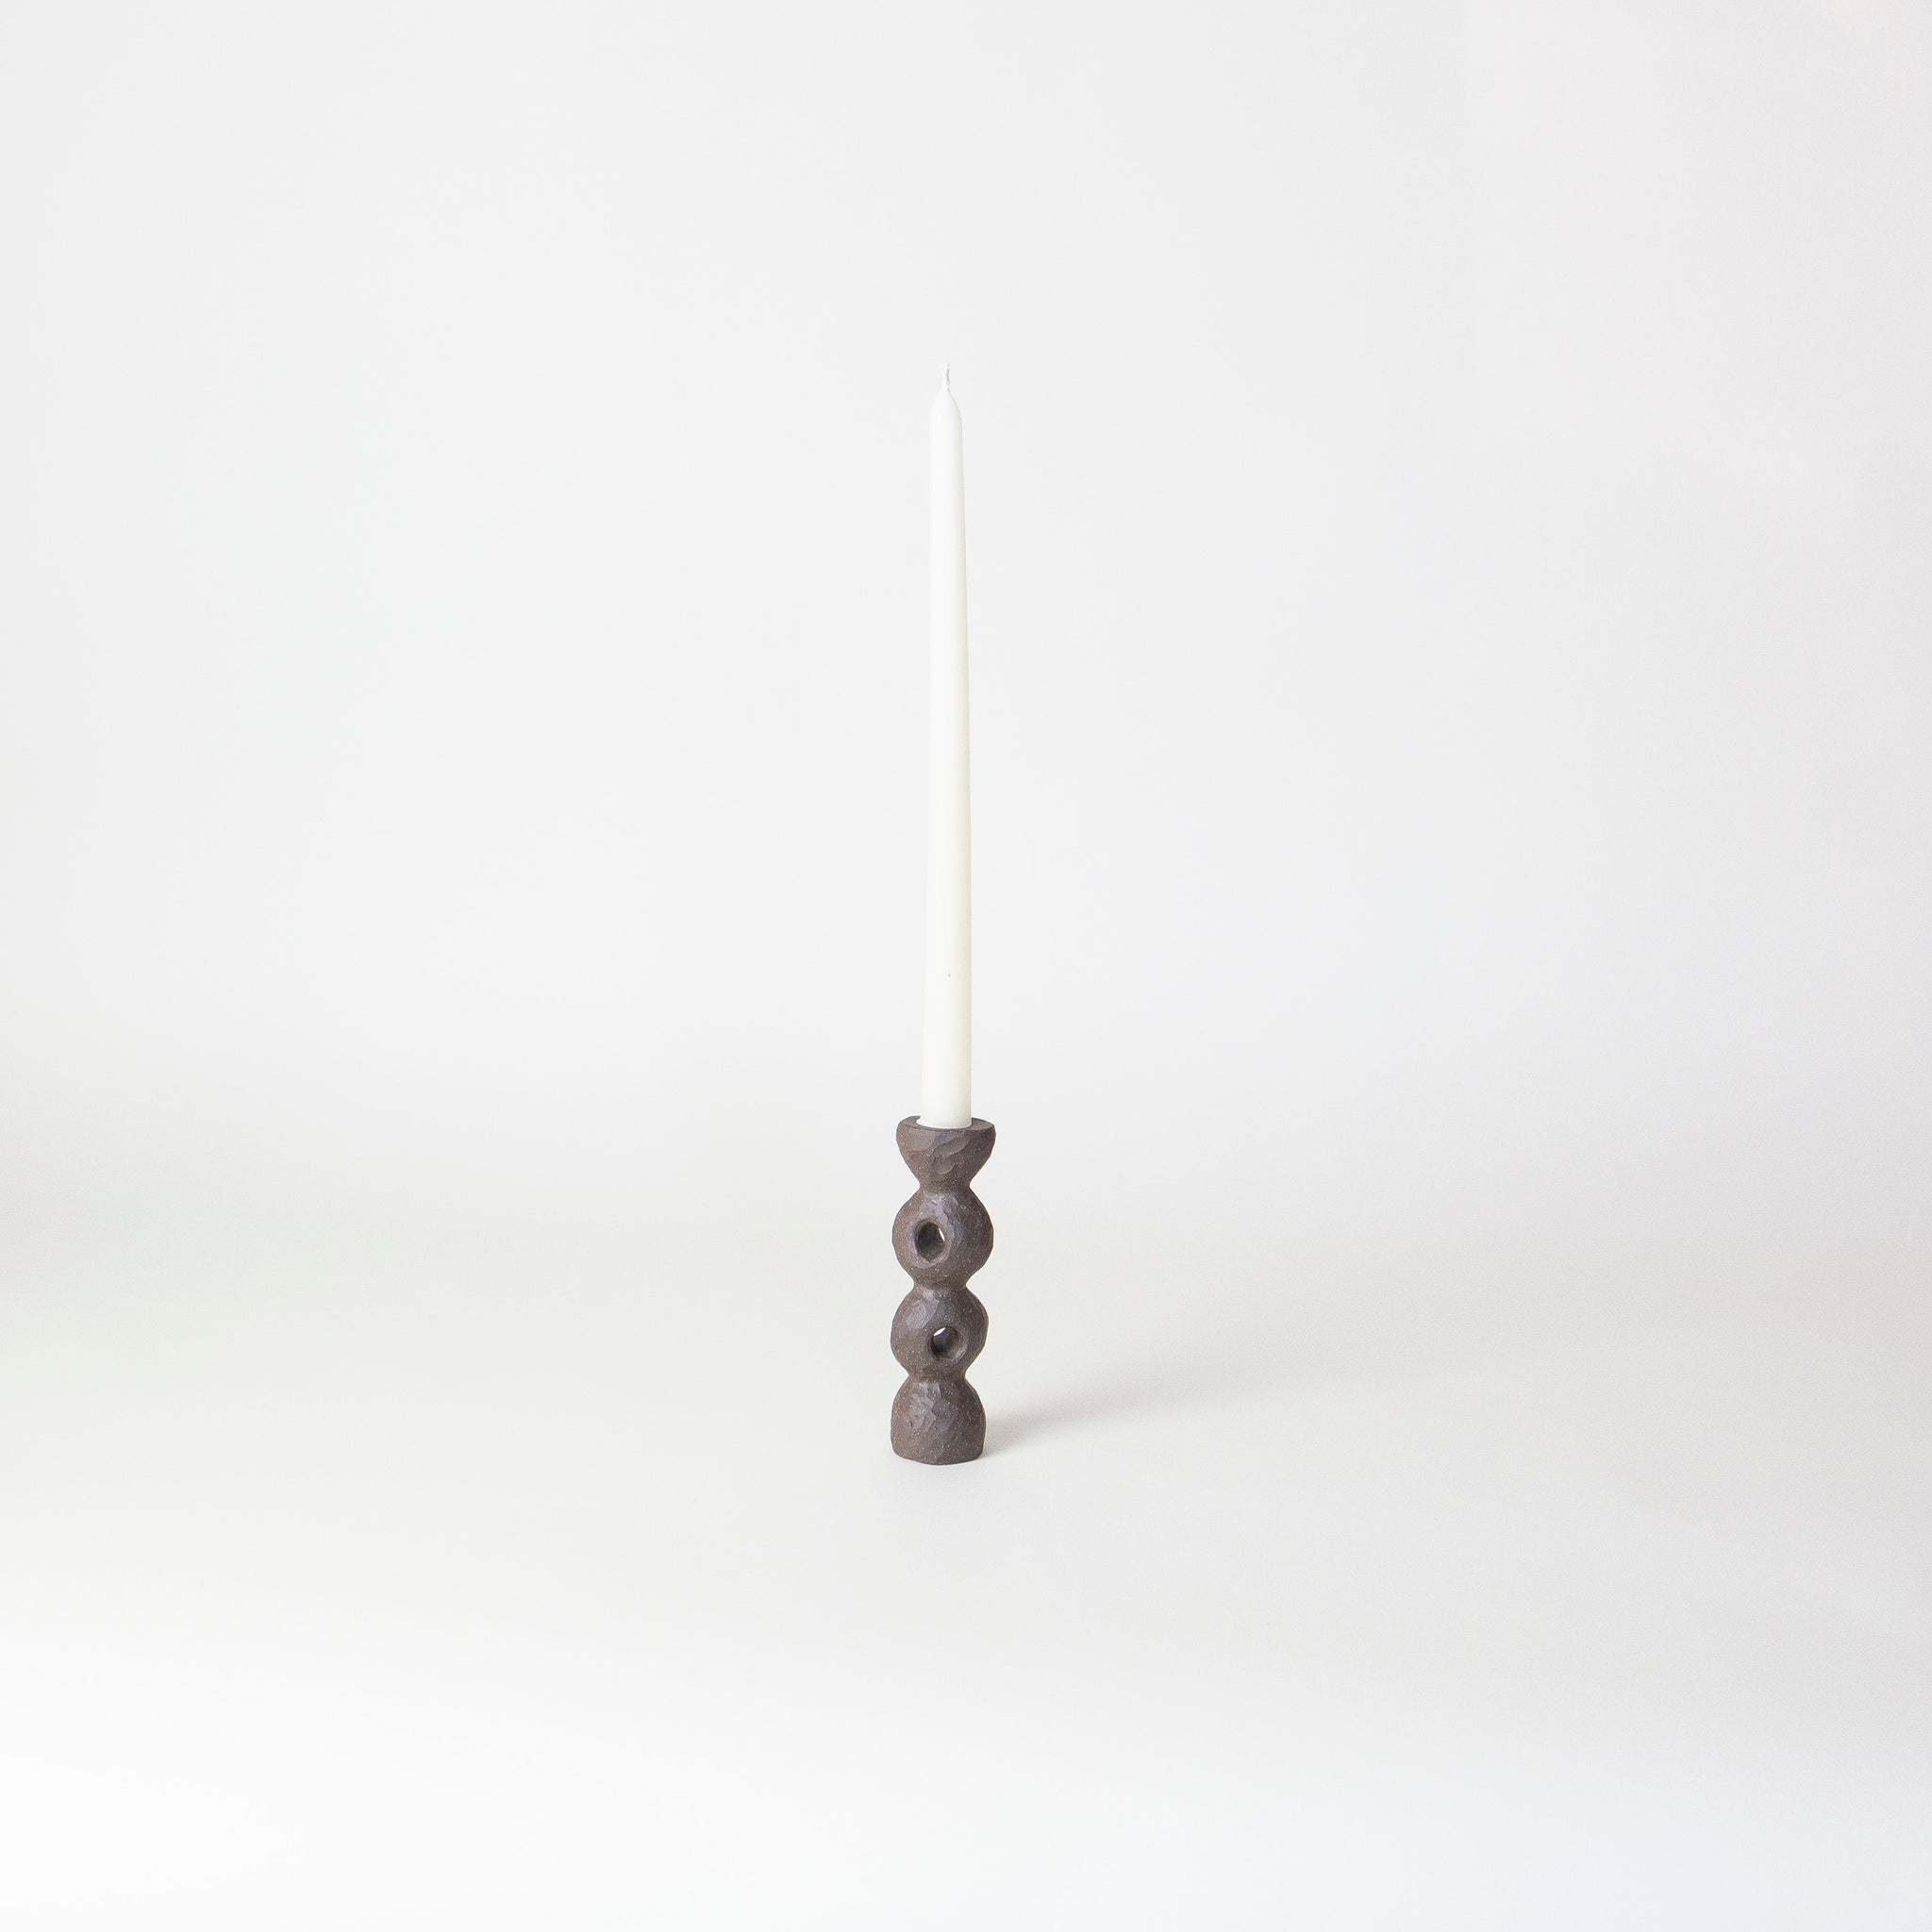 Candlestick Holders | Sarah Mijares Fick